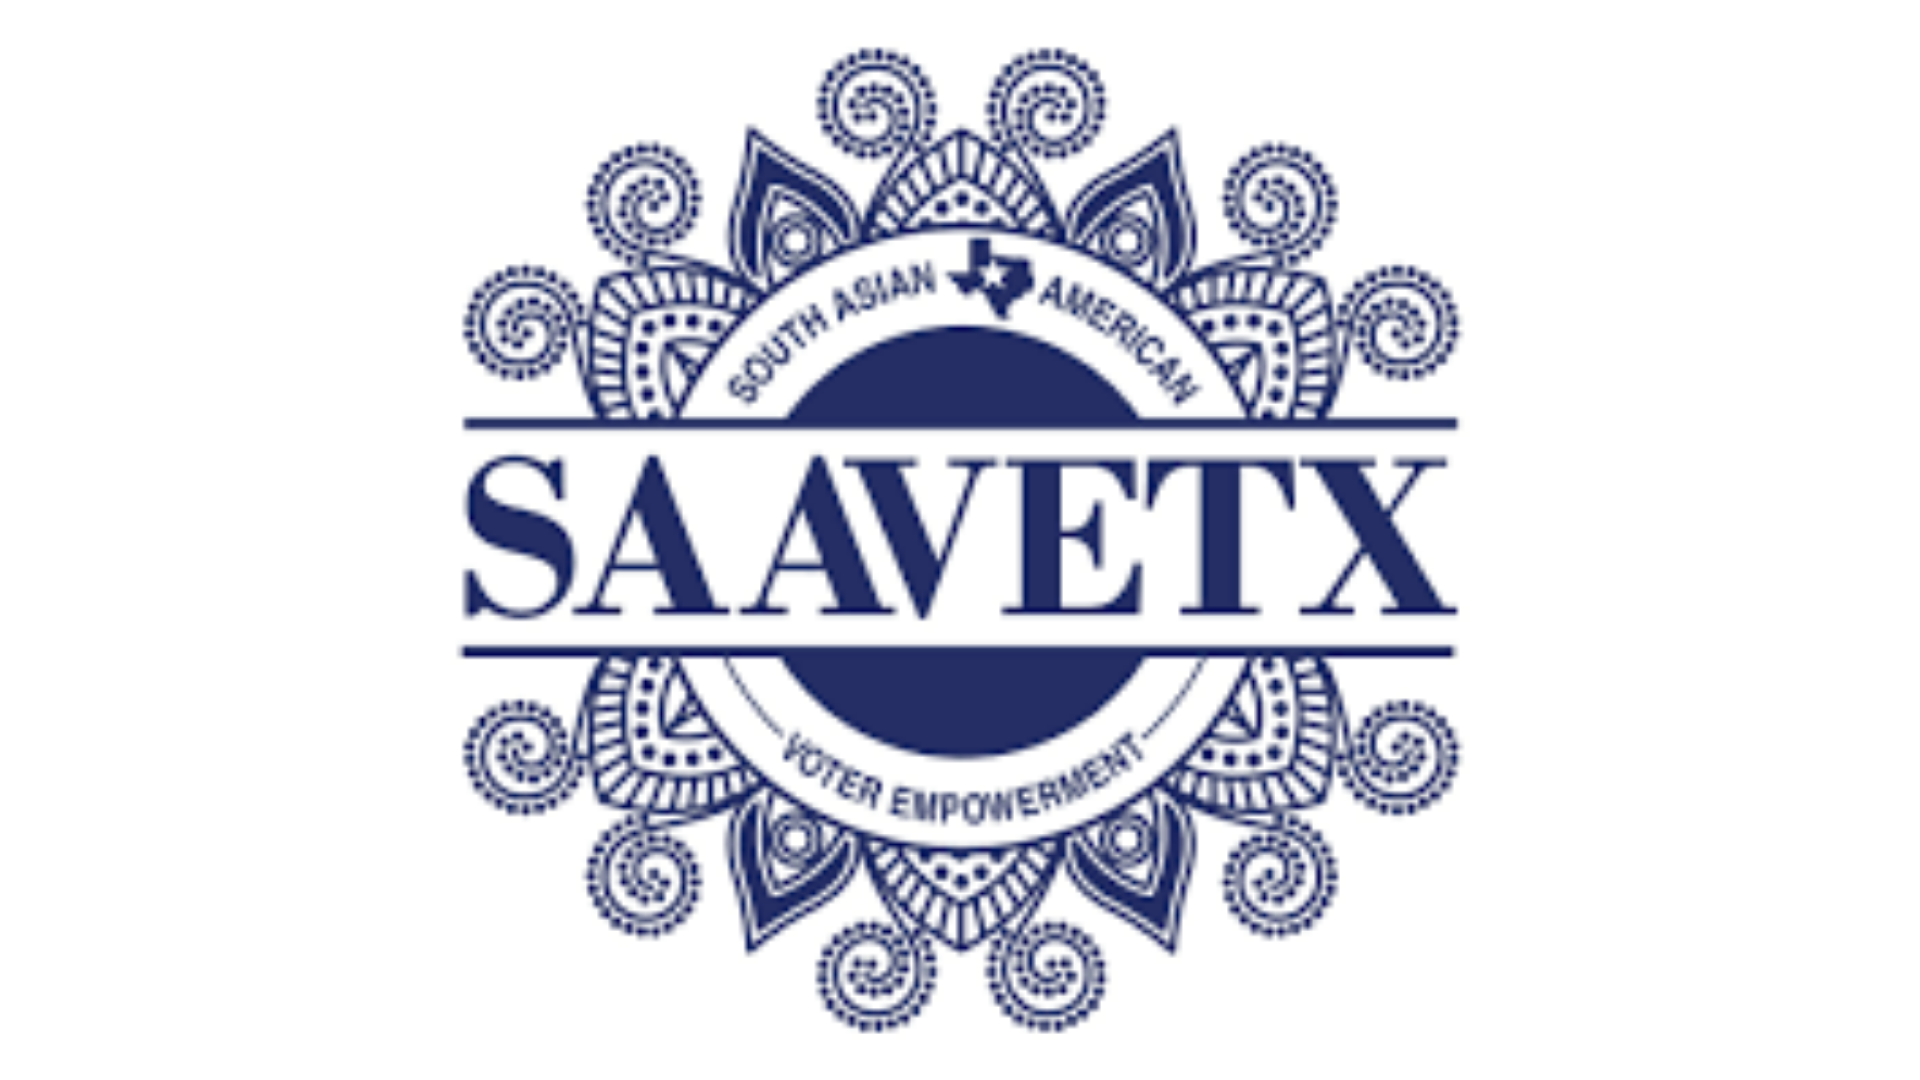 SAAVETX.png